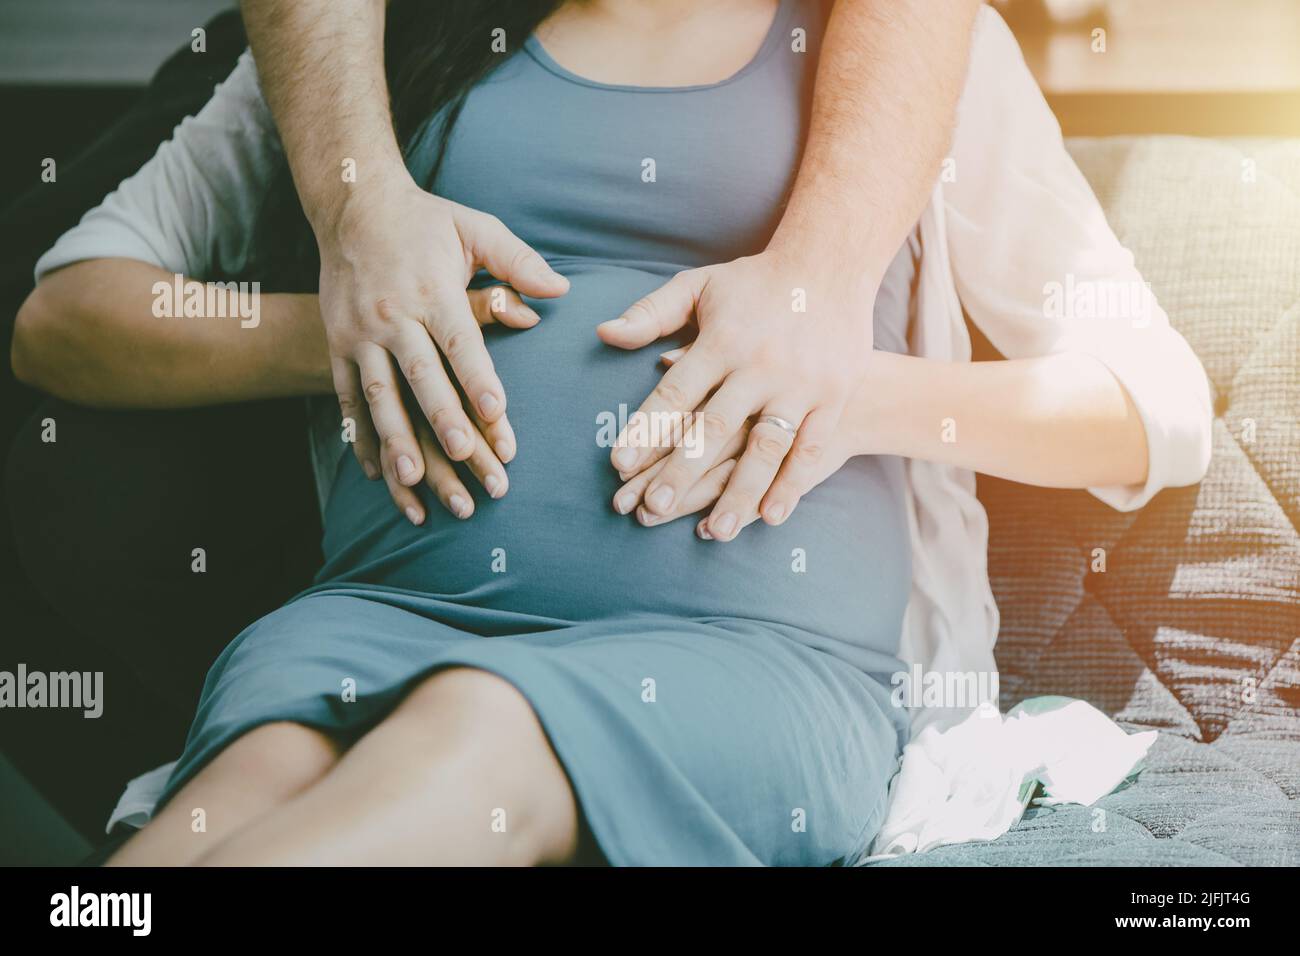 Embarazo mujer maternidad nuevo bebé mamá con marido cubierta de la mano proteger para el cuidado del amor nuevo concepto de la familia. Foto de stock